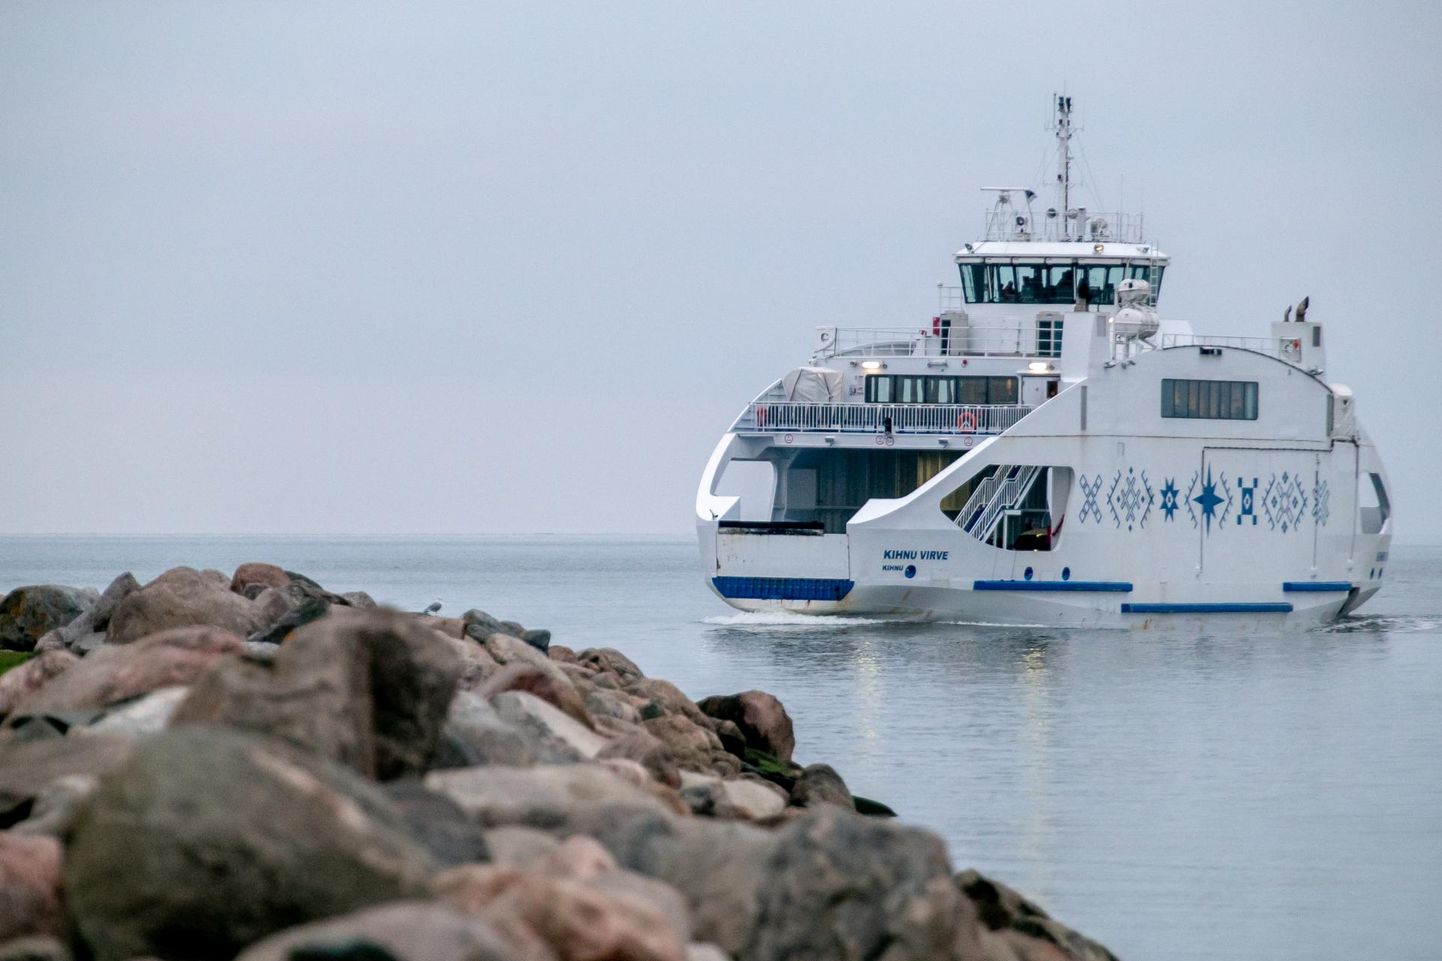 Kihnlaste unistuste laev, 200 reisijakohaga Kihnu Virve teenib saare rahvast neljandat talve.